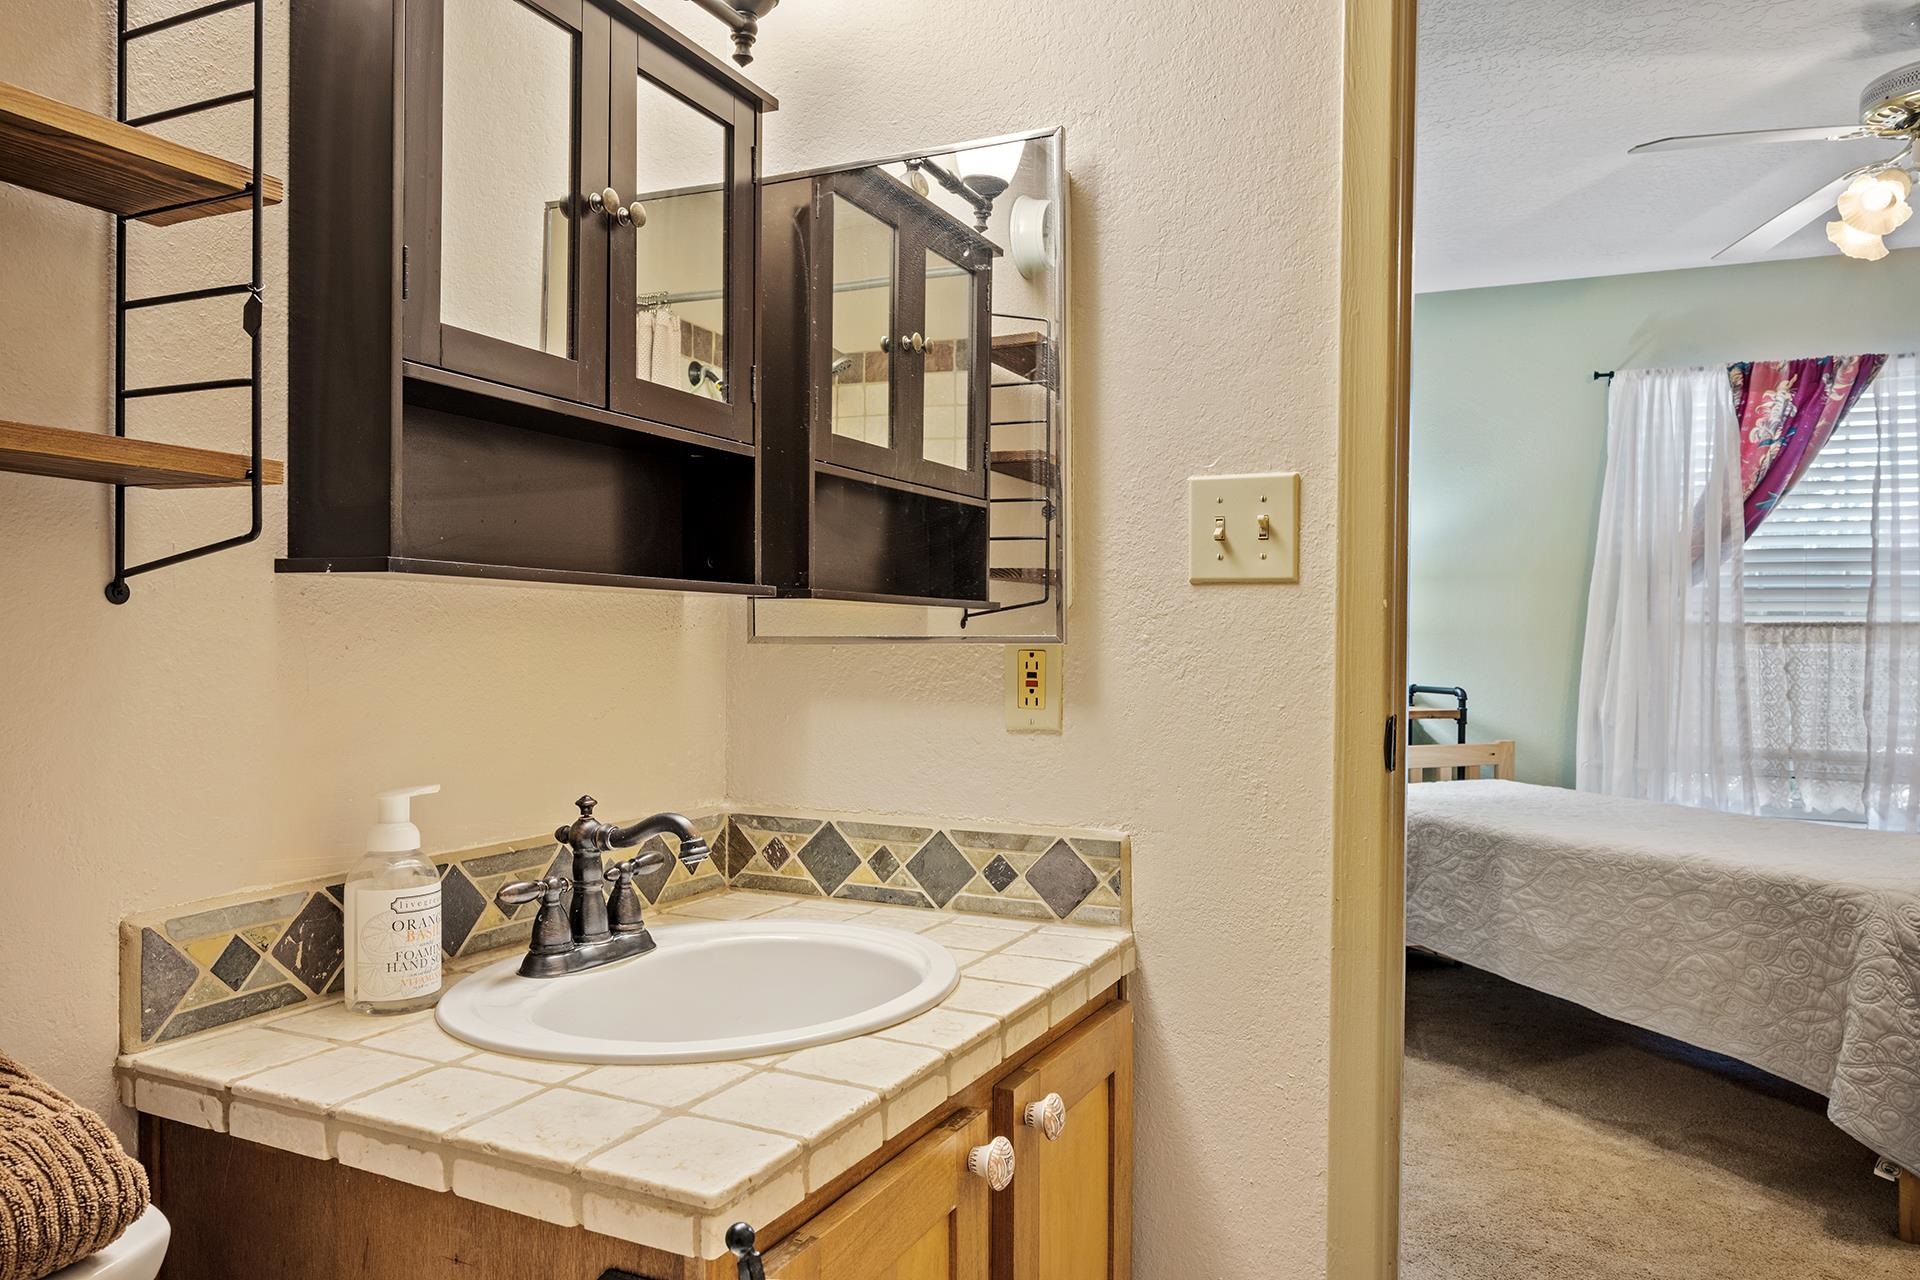 2501 ZIA #8111, Santa Fe, New Mexico 87505, 2 Bedrooms Bedrooms, ,2 BathroomsBathrooms,Residential,For Sale,2501 ZIA #8111,202202199